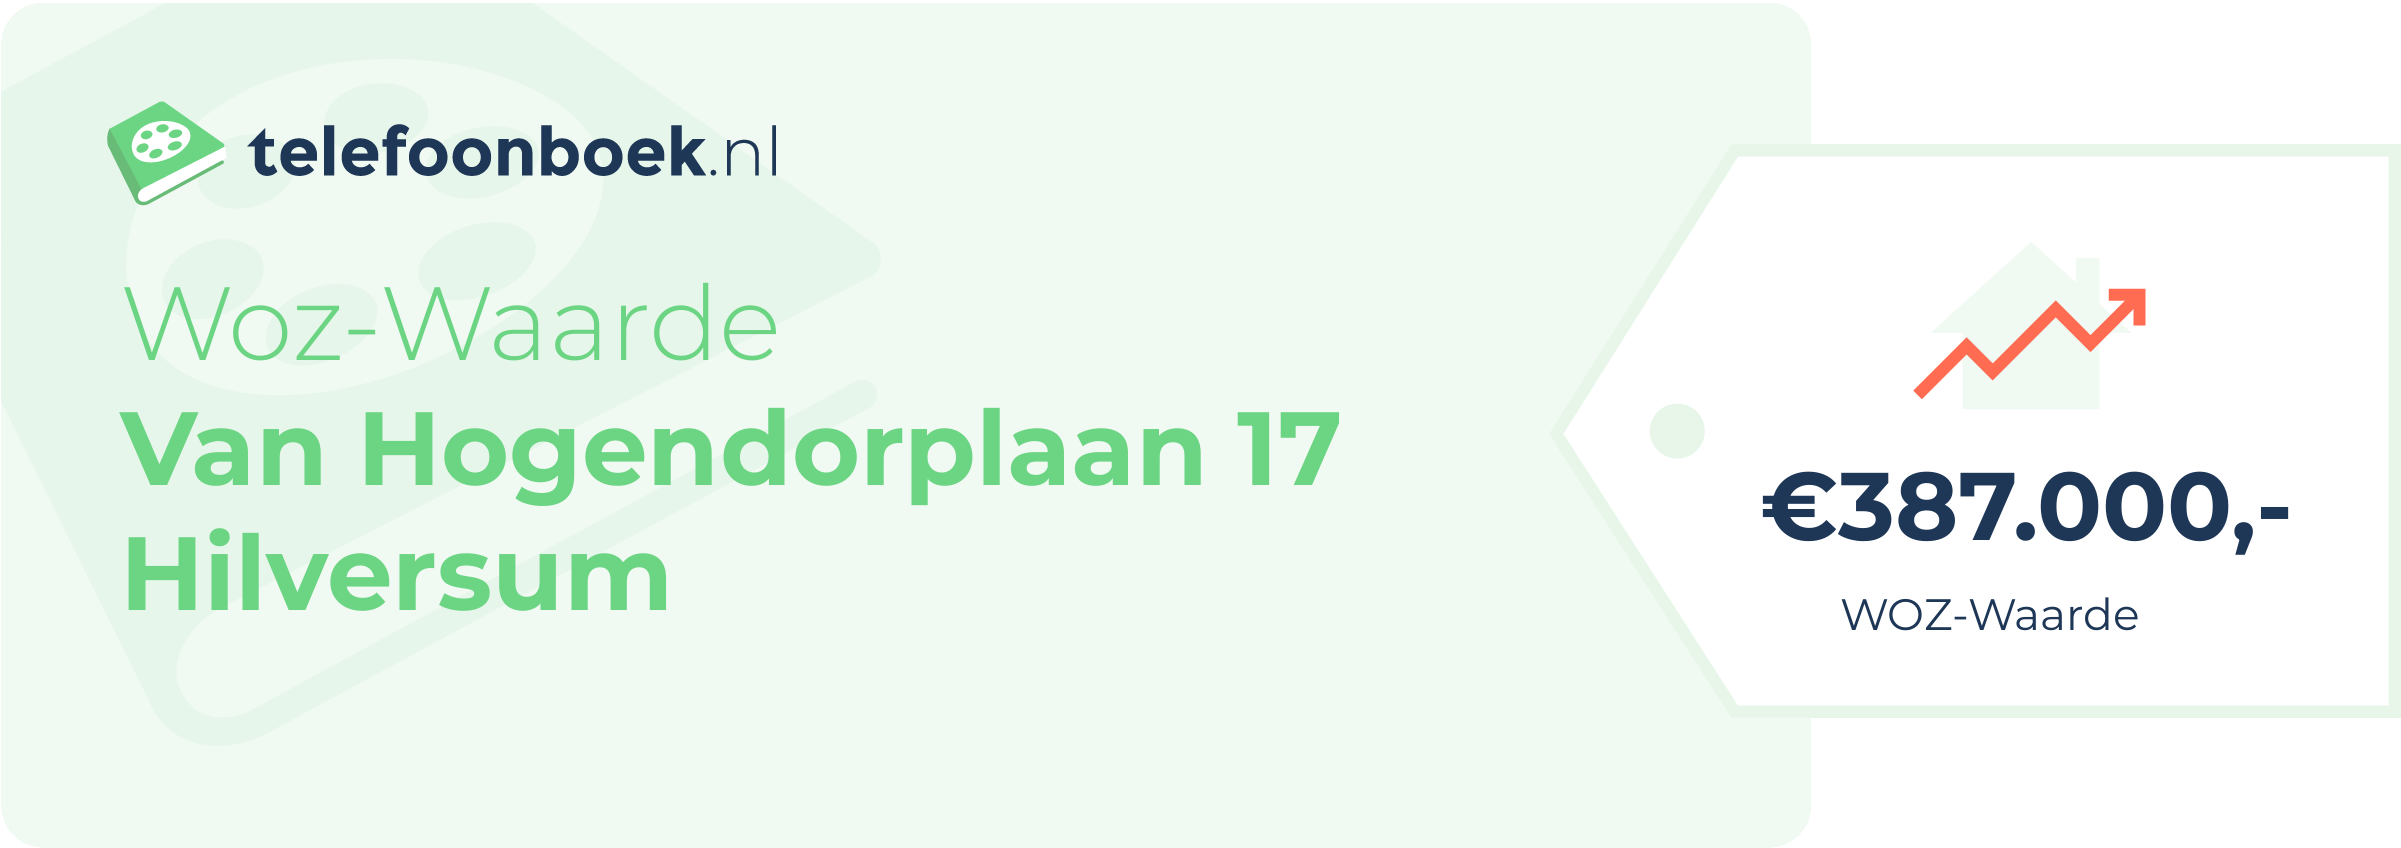 WOZ-waarde Van Hogendorplaan 17 Hilversum